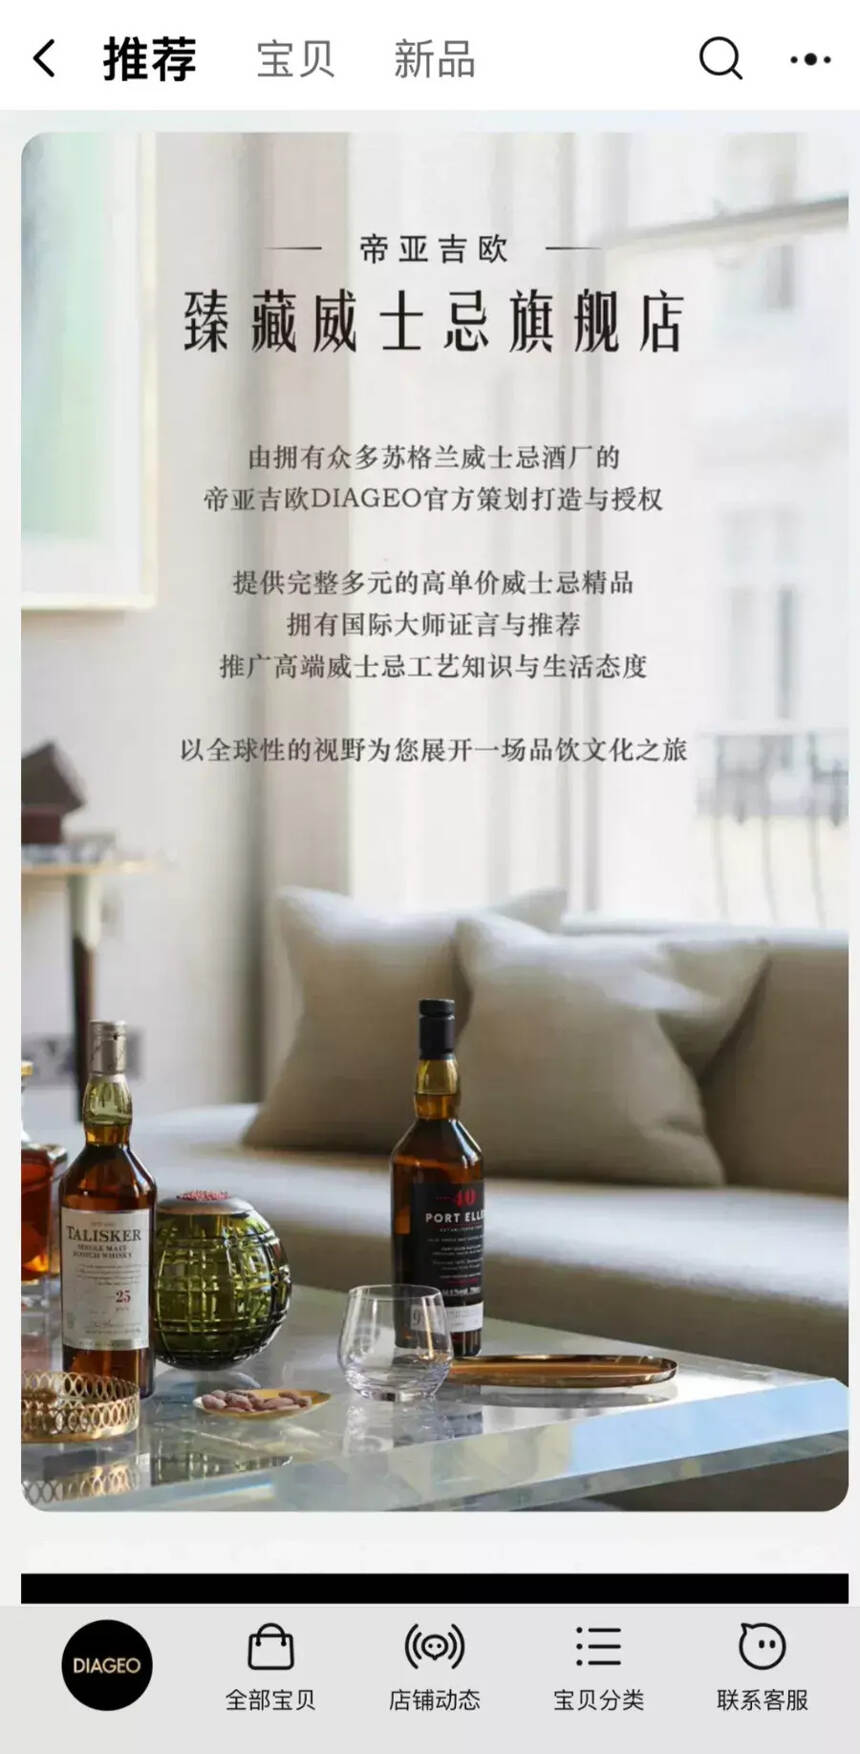 剑指中高端客群，帝亚吉欧臻藏威士忌旗舰店盛大开业